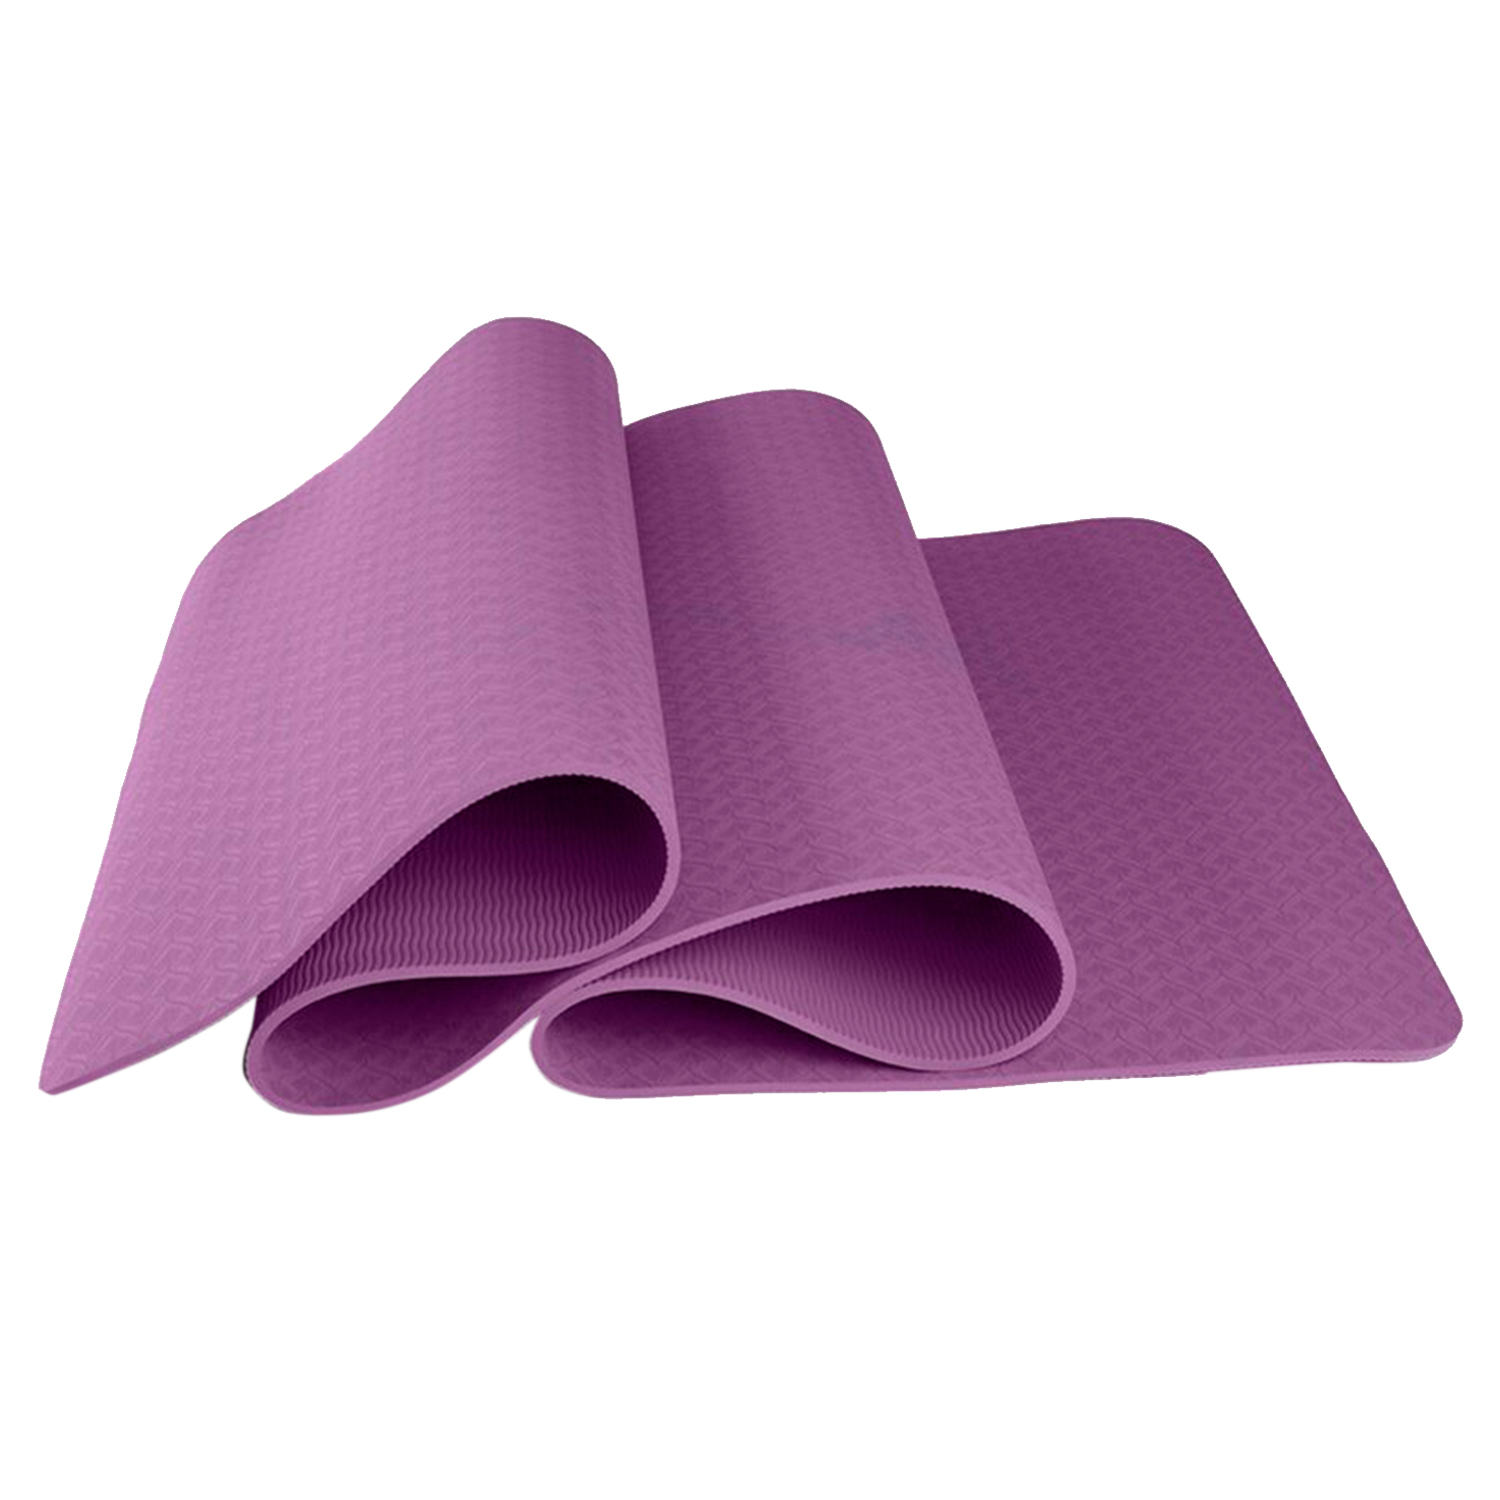 фото Коврик для йоги и фитнеса, толщина 0,6 см, фиолетовый, 183х61х0,6 см, atlanterra at-ym-09